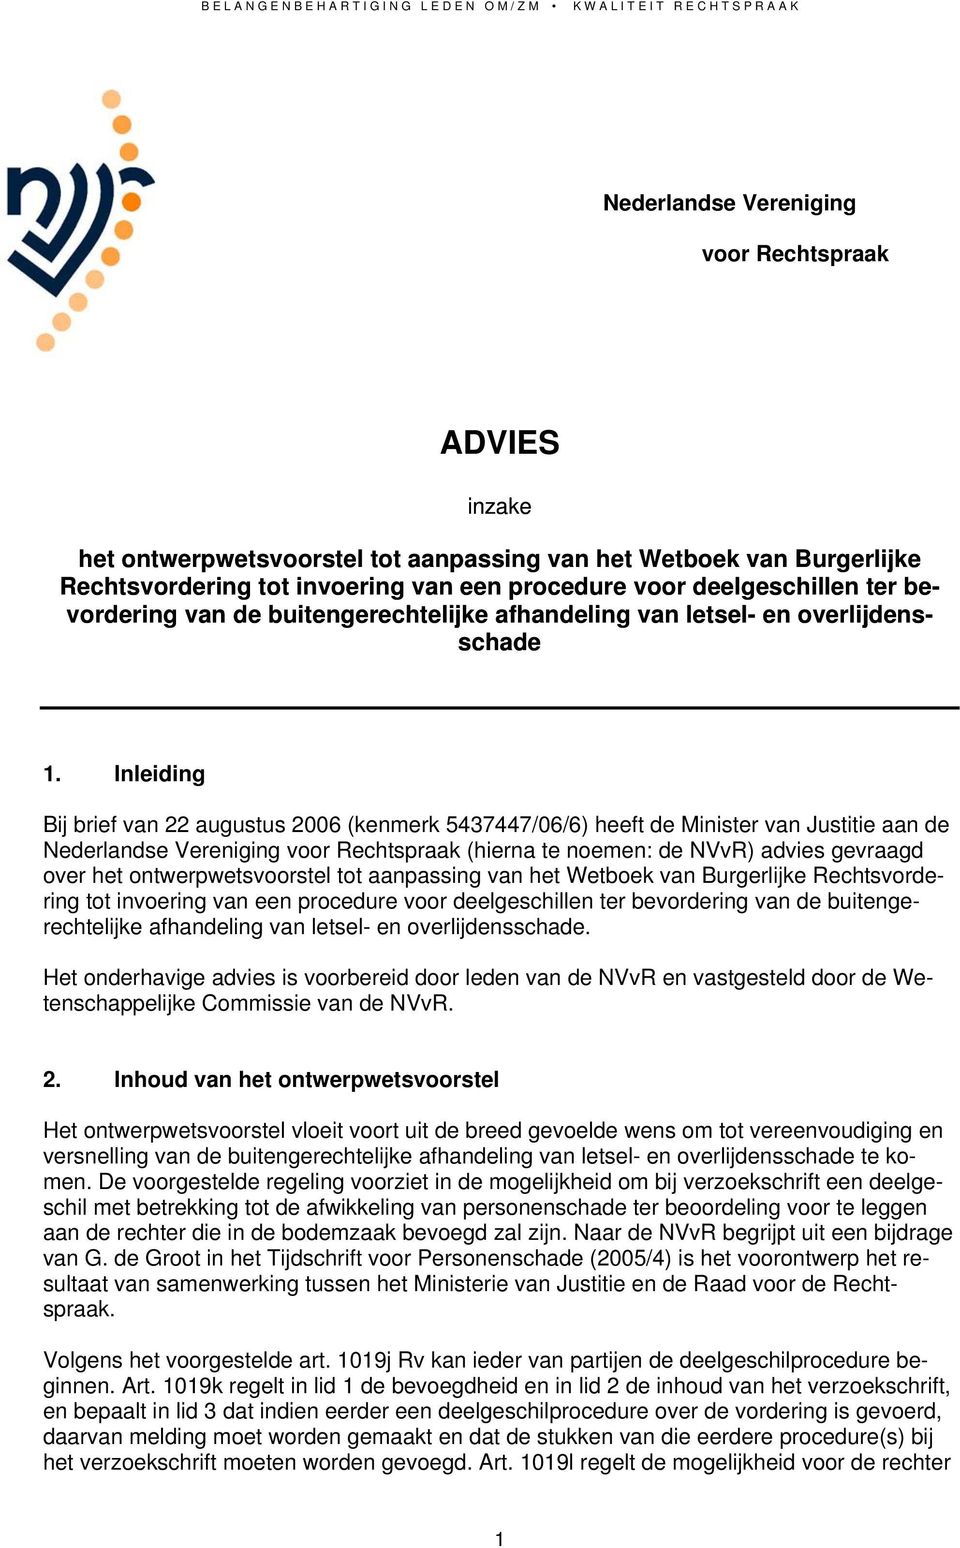 Inleiding Bij brief van 22 augustus 2006 (kenmerk 5437447/06/6) heeft de Minister van Justitie aan de Nederlandse Vereniging voor Rechtspraak (hierna te noemen: de NVvR) advies gevraagd over het